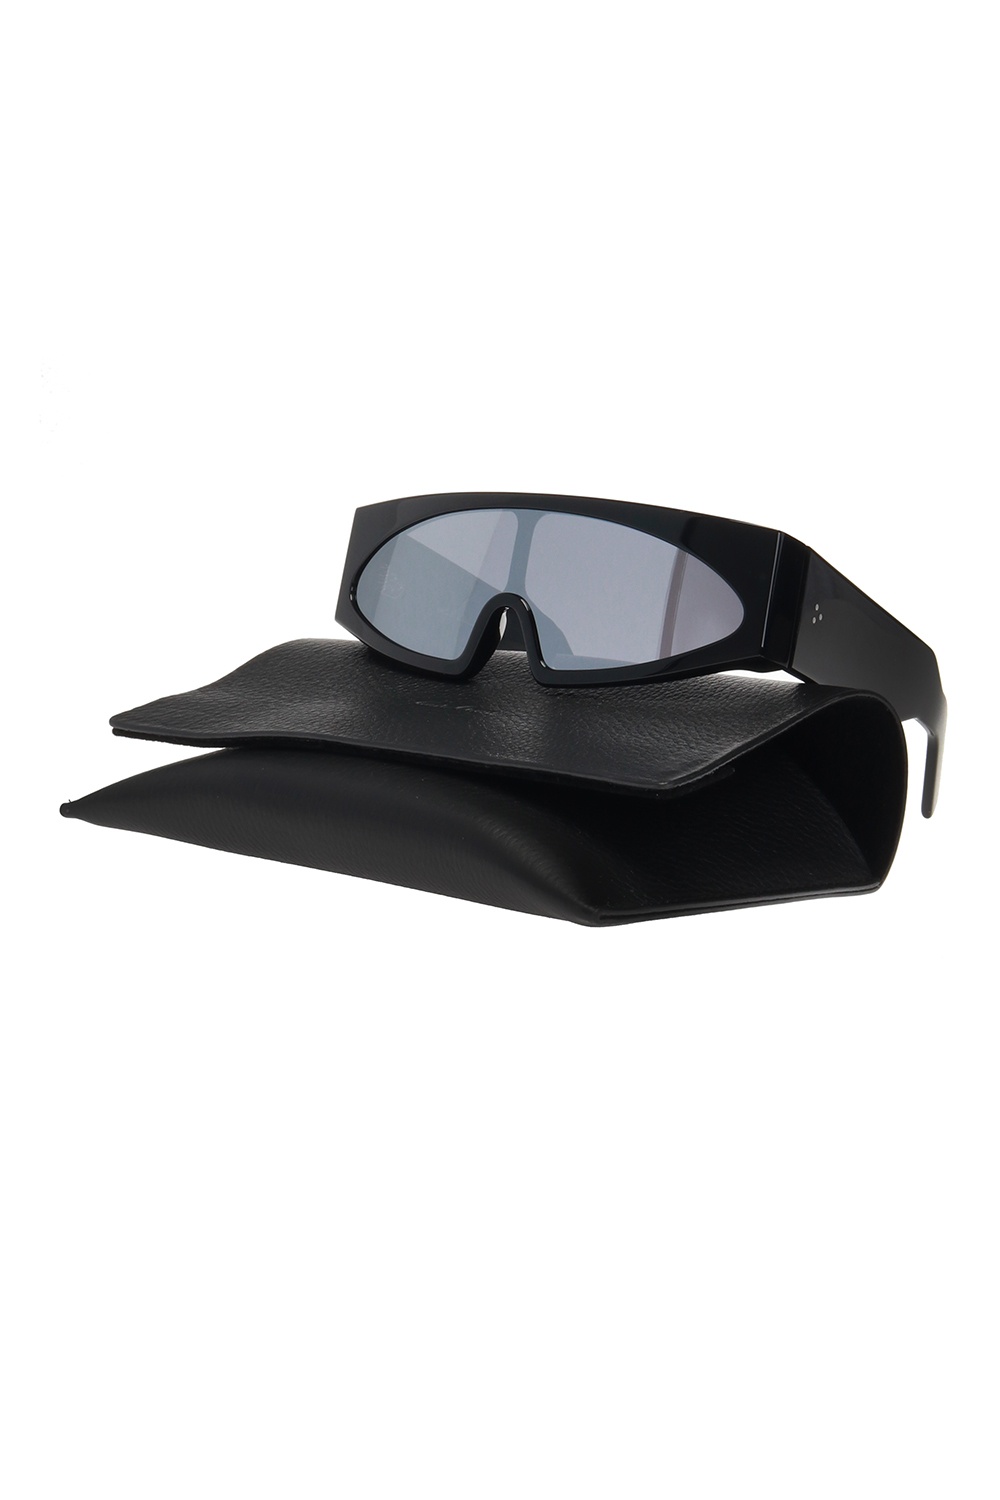 Rick Owens Ermenegildo Zegna EZ0028 55N 54 Men Sunglasses Smoke Lens